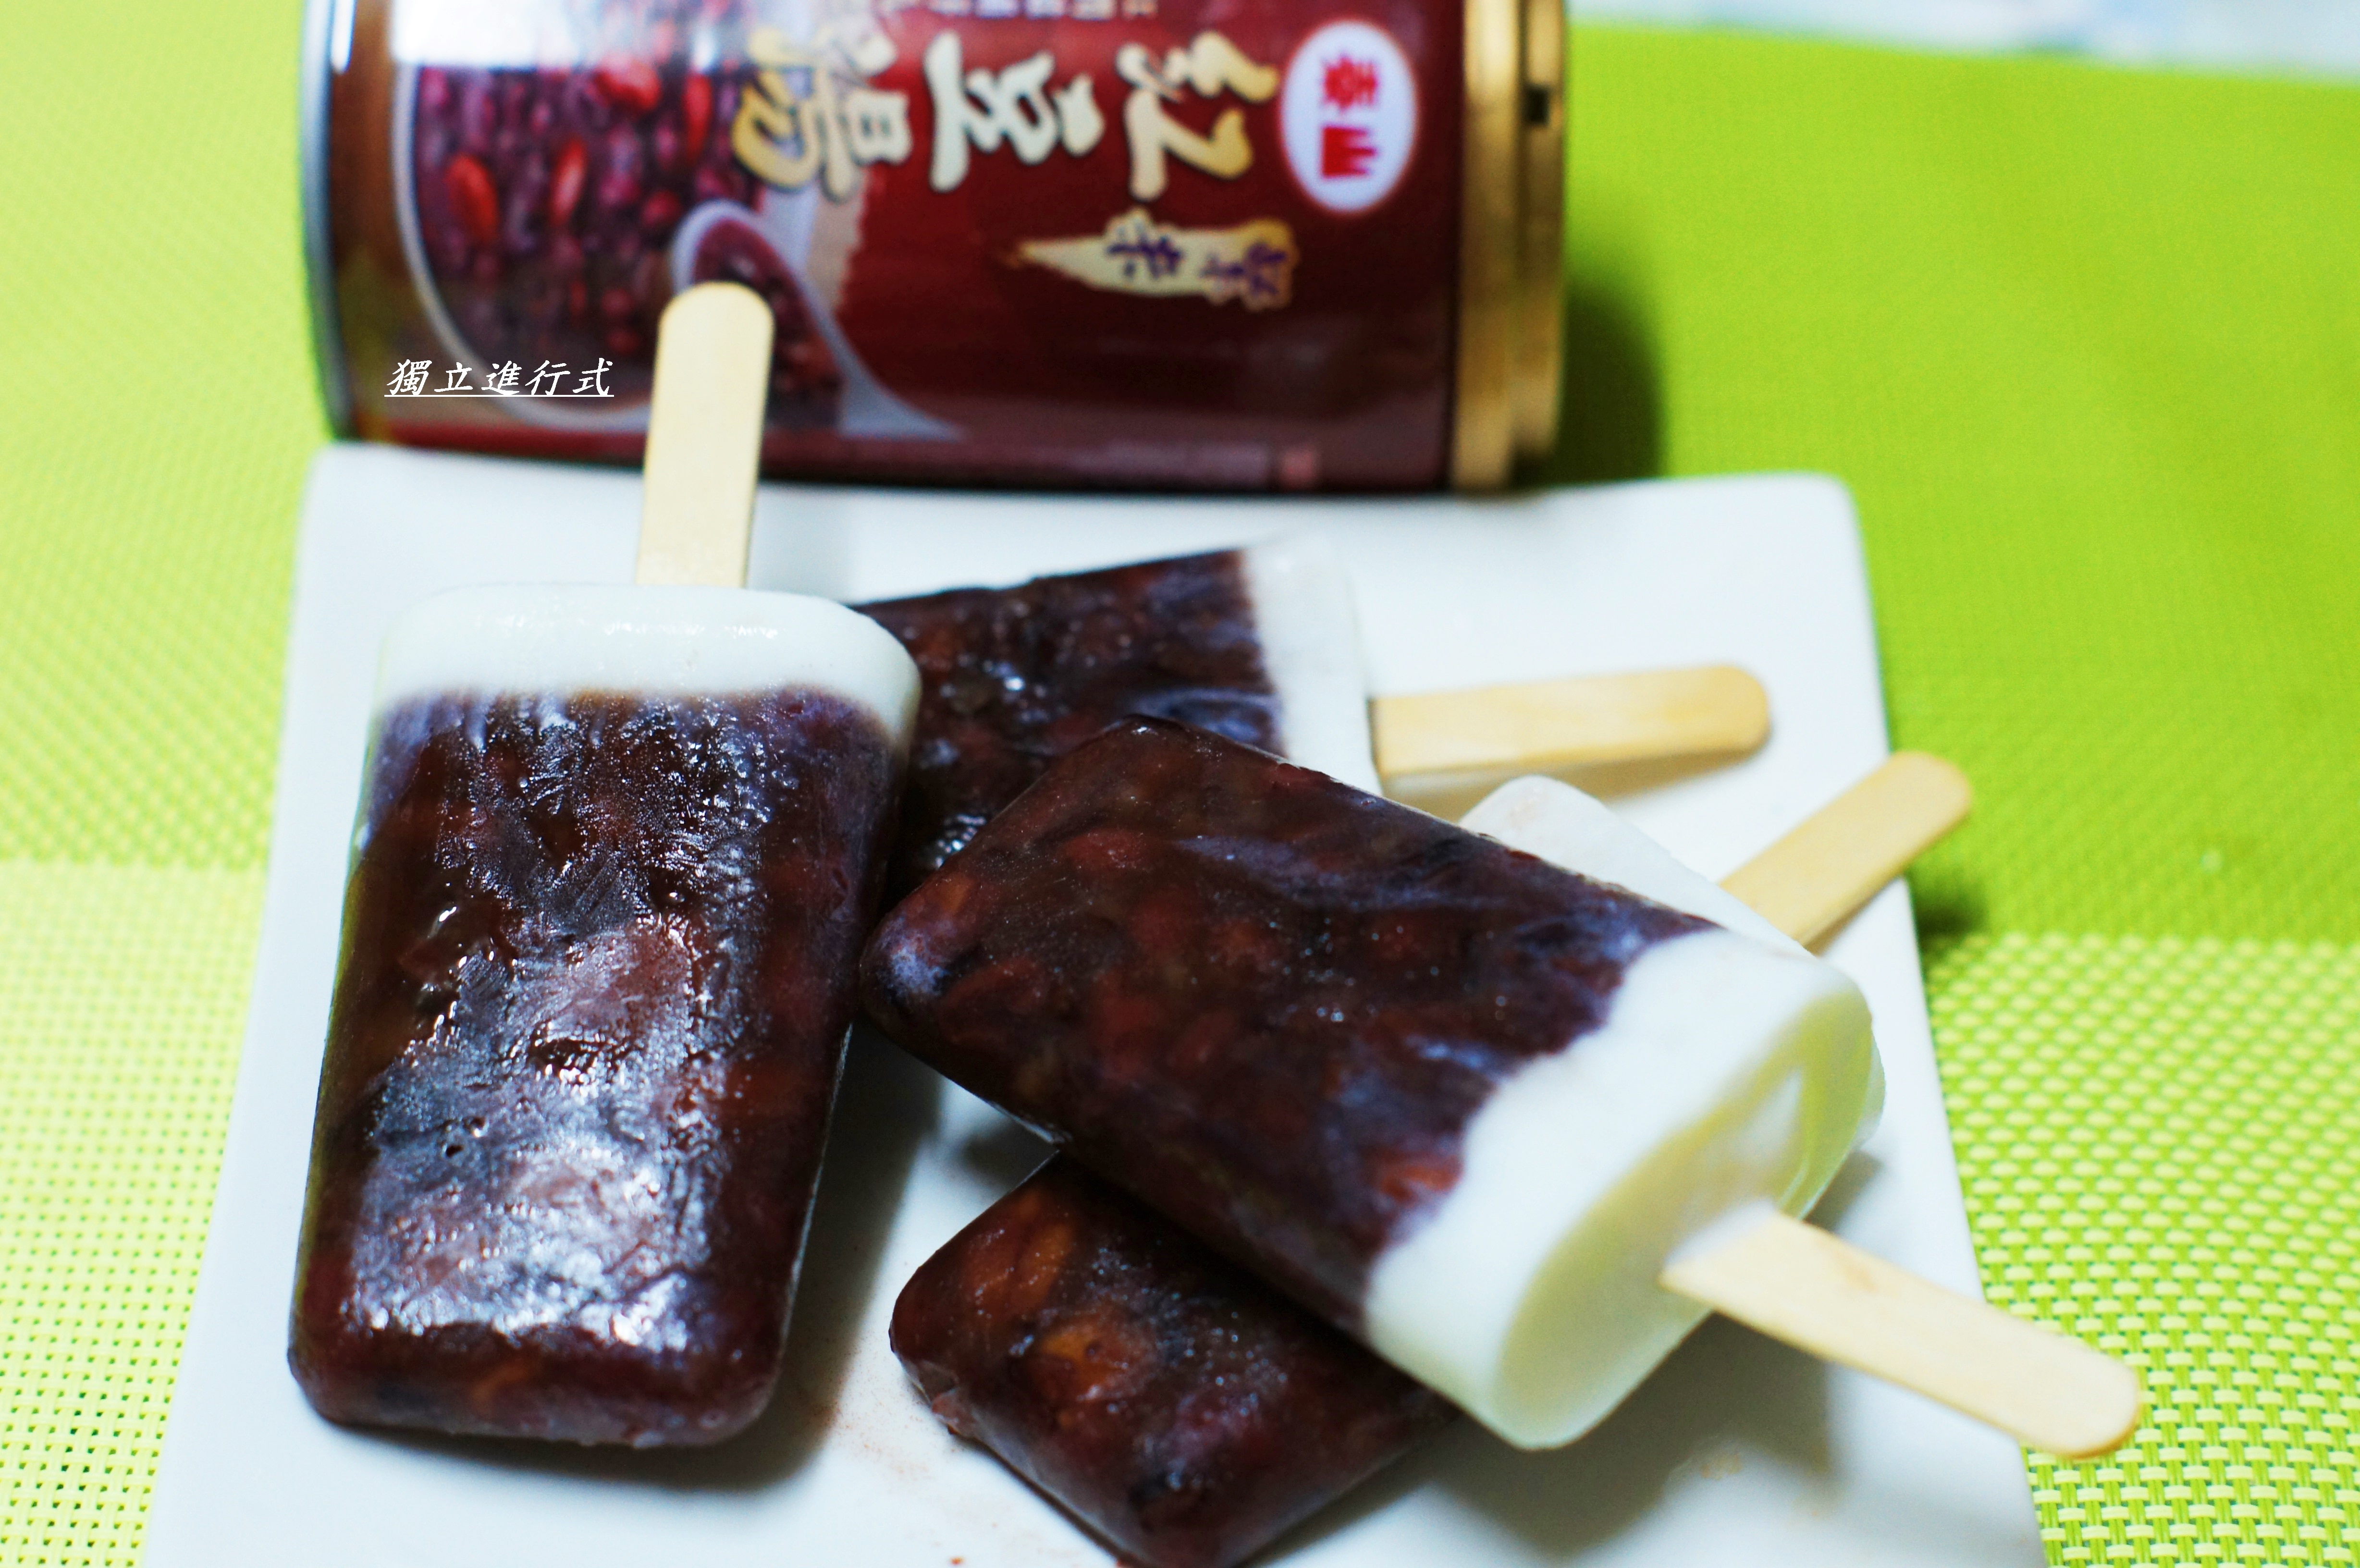 紅豆牛奶冰棒~泰山紫米紅豆湯